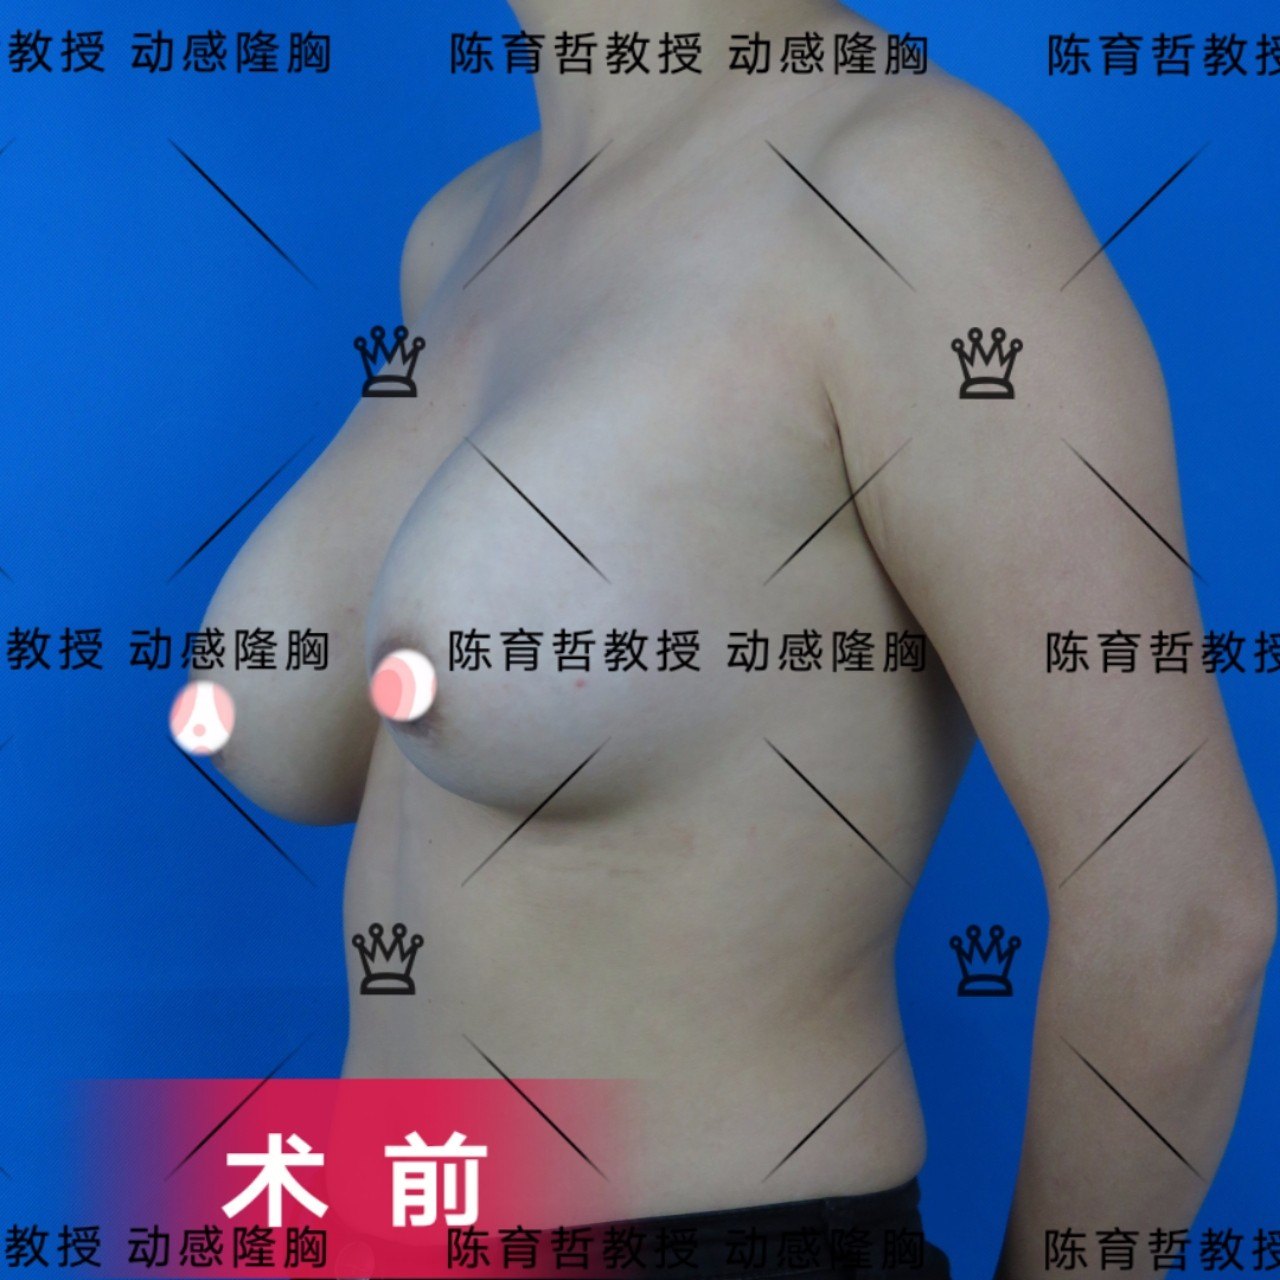 动感隆胸案例(36)注射物取出再植入假体的包膜